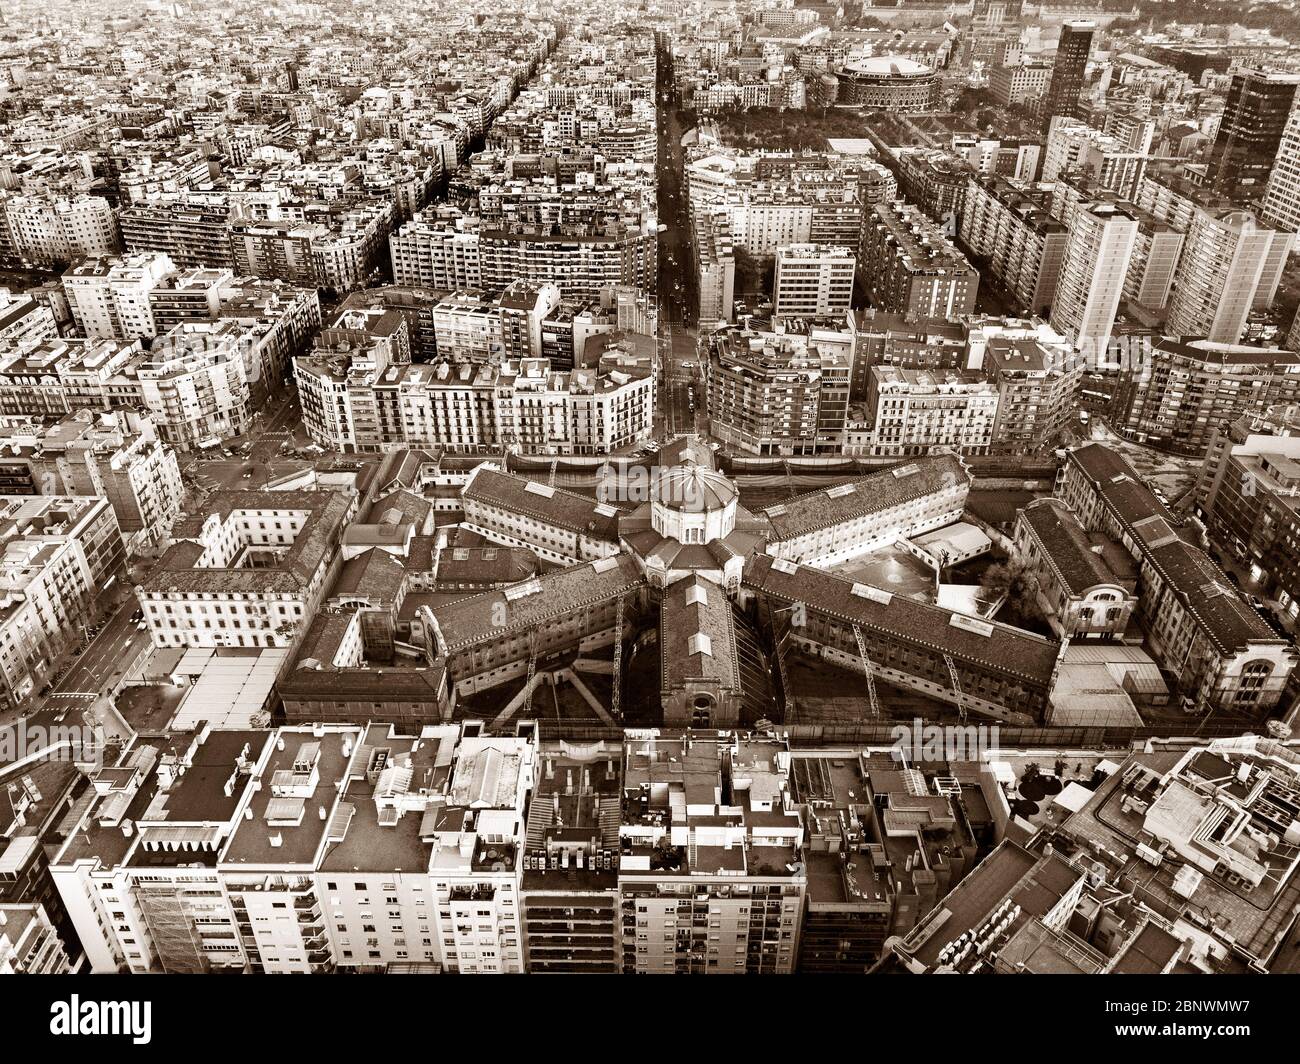 Modelo altes Gefängnis Luftaufnahme im eixample Viertel Barcelona Katalonien Spanien La Model war das berüchtigte Franco Foltergefängnis. La Model, wie es mehr ist Stockfoto